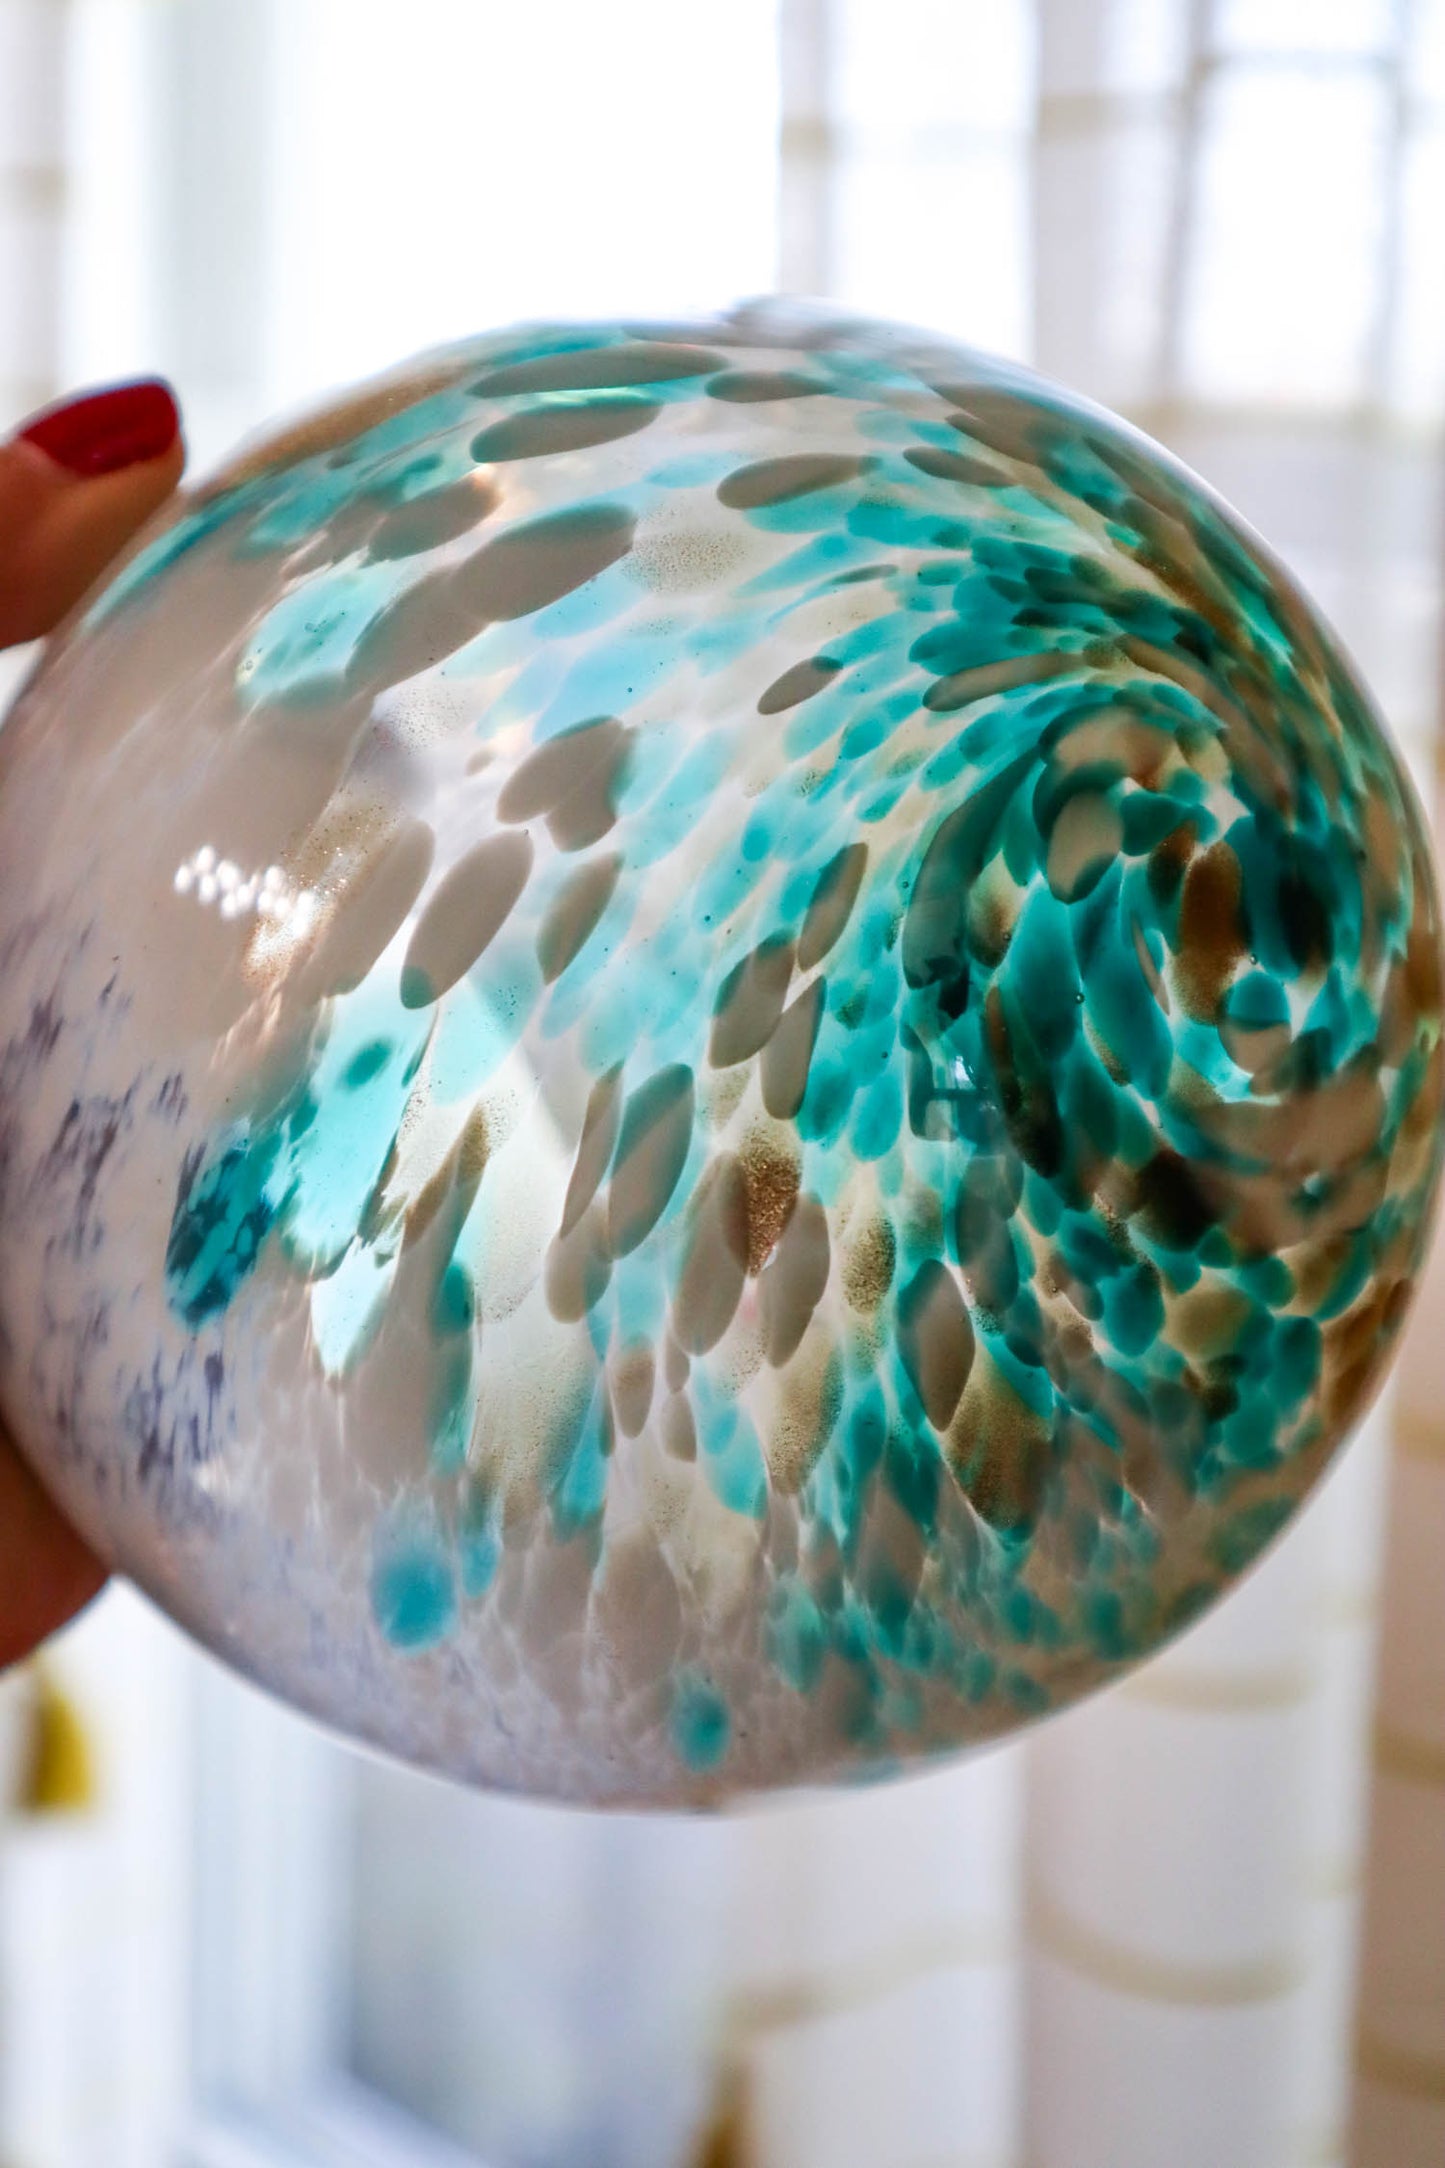 Swirling Seas Sphere